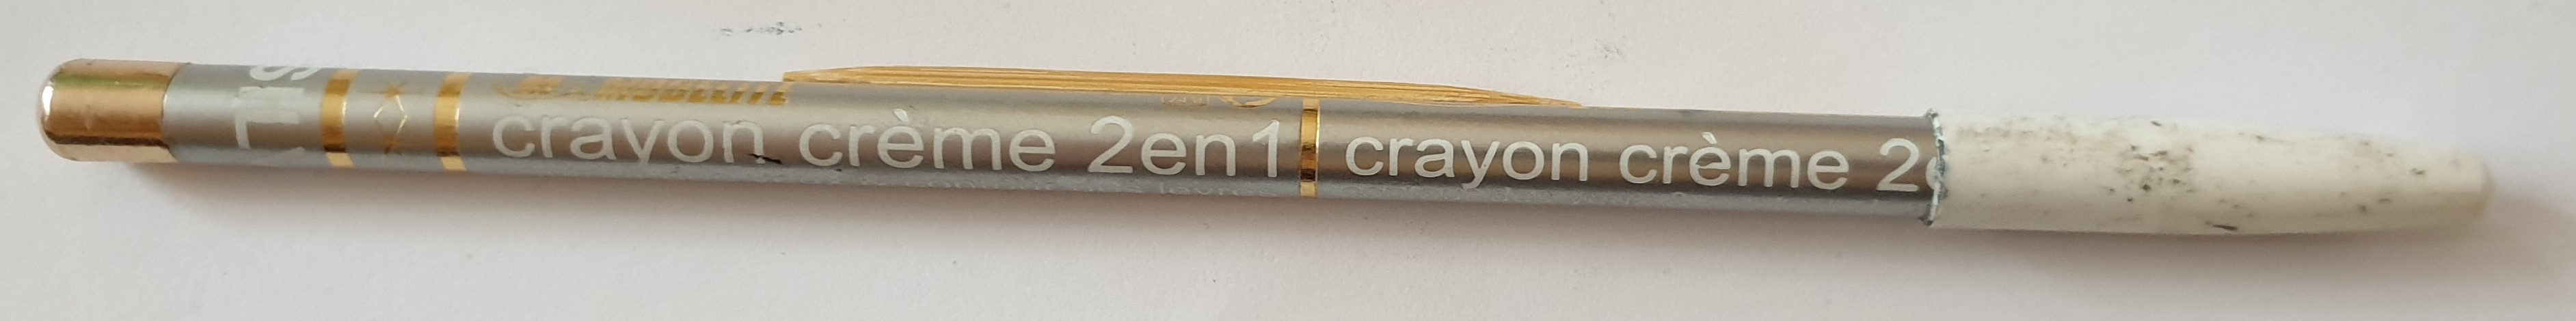 crayon crème 2en1 - Product - de